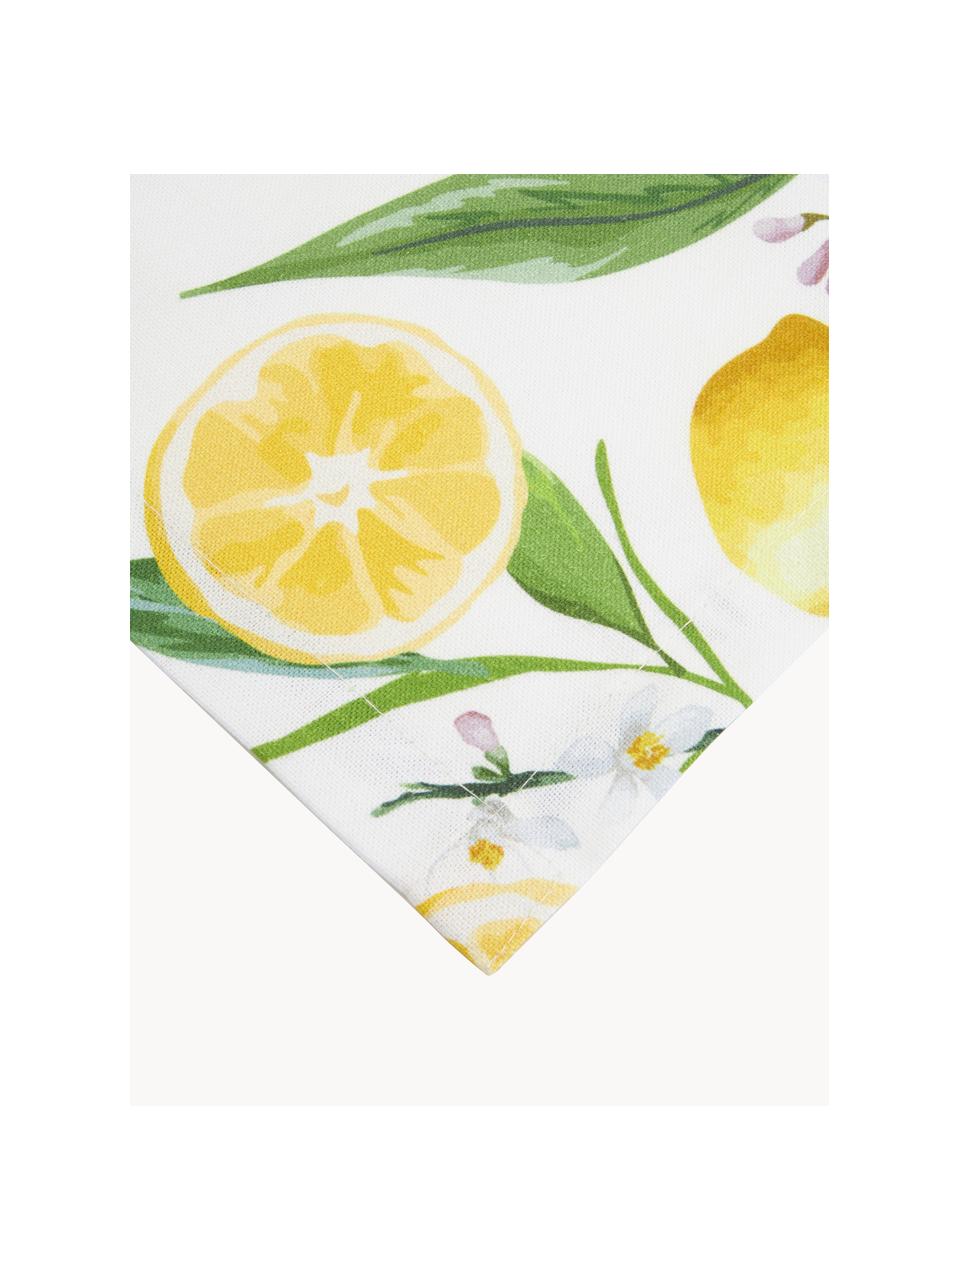 Runner da tavola con motivo limoni Frutta, 100% cotone, Giallo, bianco, verde, Larg. 40 x Lung. 145 cm